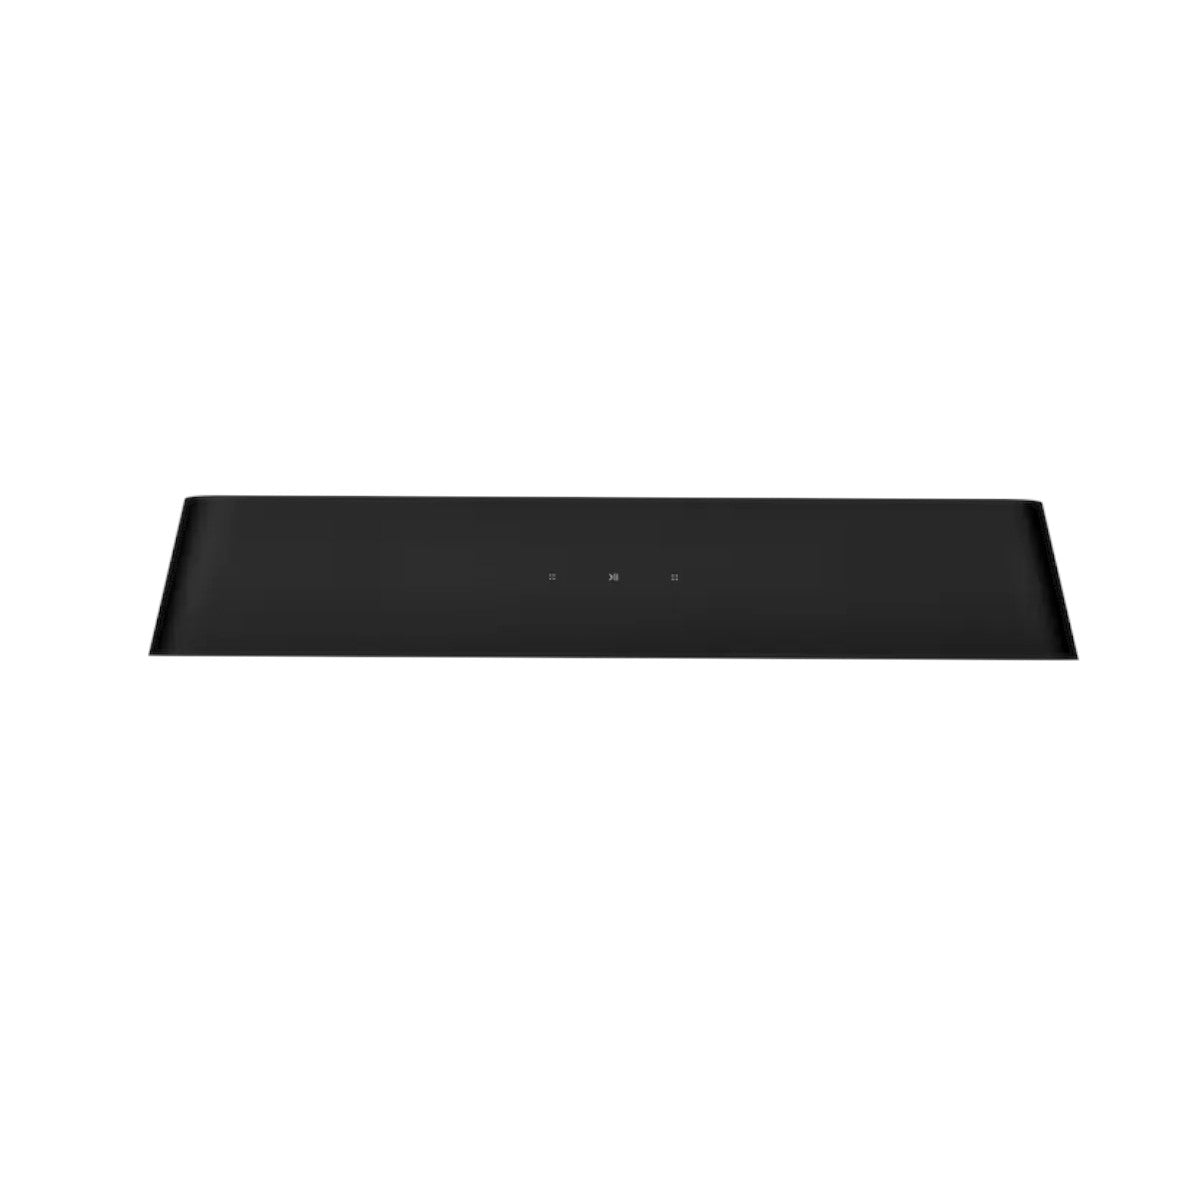 Sonos Ray Compact Soundbar (Black)